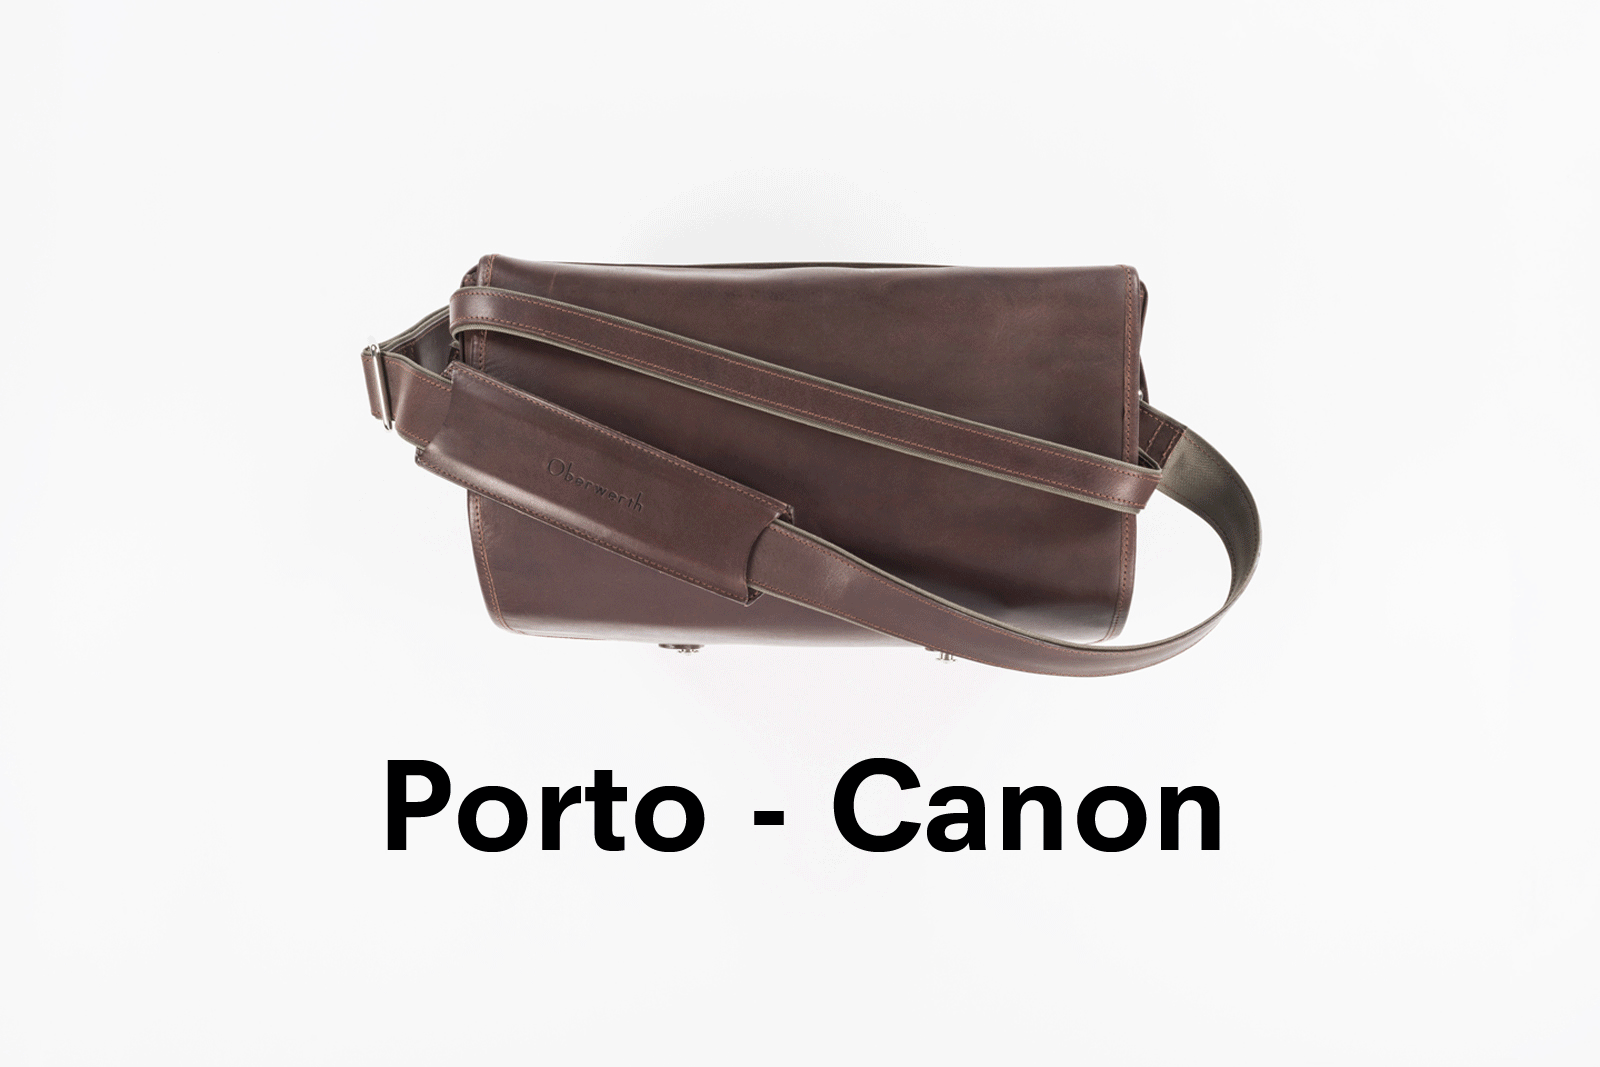 Camera bag PORTO